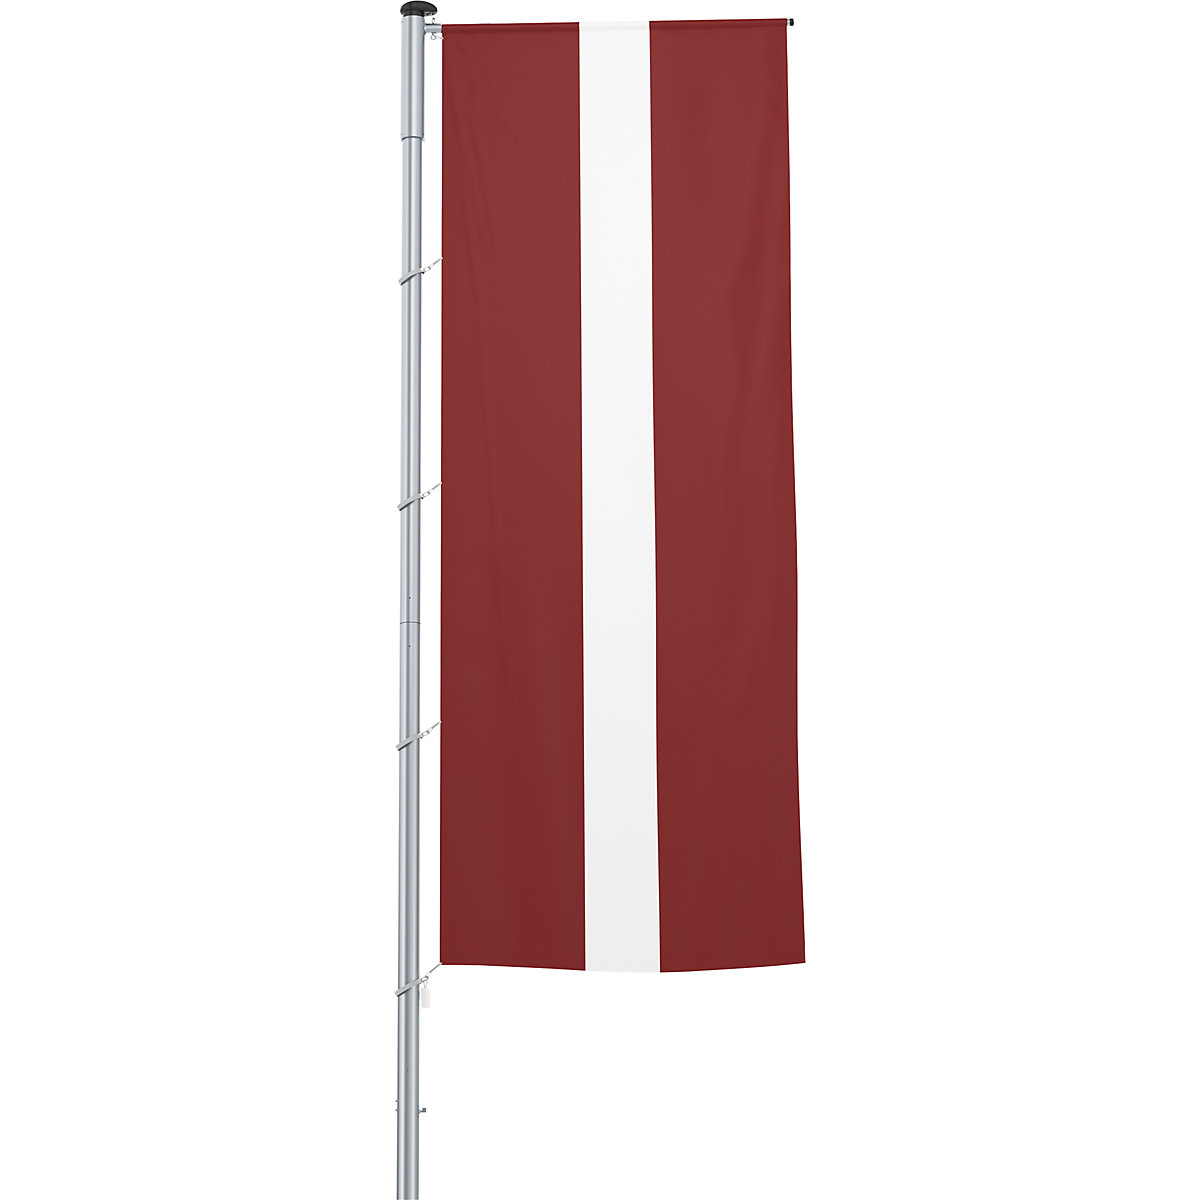 Vlajka na pozdĺžne upevnenie na stožiar/národná vlajka – Mannus, formát 1,2 x 3 m, Lotyšsko-19